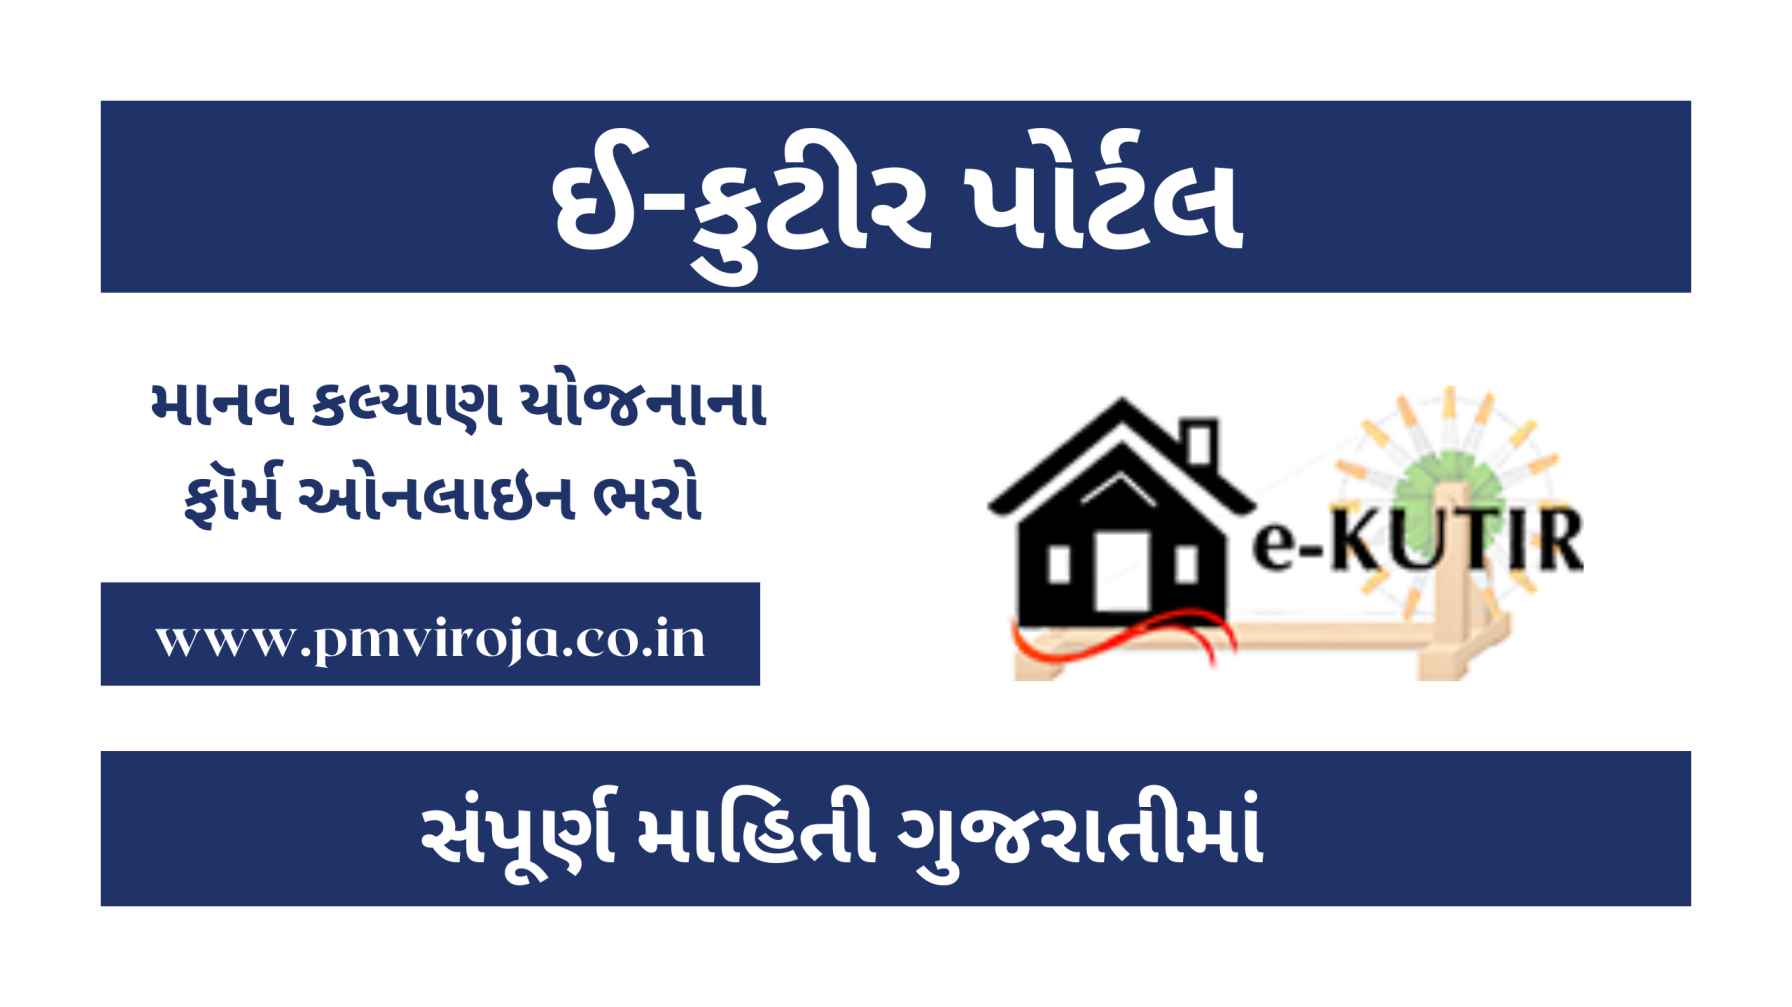 || ઈ-કુટીર પોર્ટલ માં રજીસ્ટ્રેશનની માહિતી, ઈ-કુટીર પોર્ટલ પર રજીસ્ટ્રેશન પ્રક્રિયા, ઈ-કુટીર પોર્ટલ @e kutir.gujarat.gov.in | Mky portal HTTP e kutir Gujarat gov in, e kutir.gujarat.gov.in registration, e-kutir portal, e kutir.gujarat.gov.in online apply, E kutir application status, HTTP e kutir Gujarat gov in ||